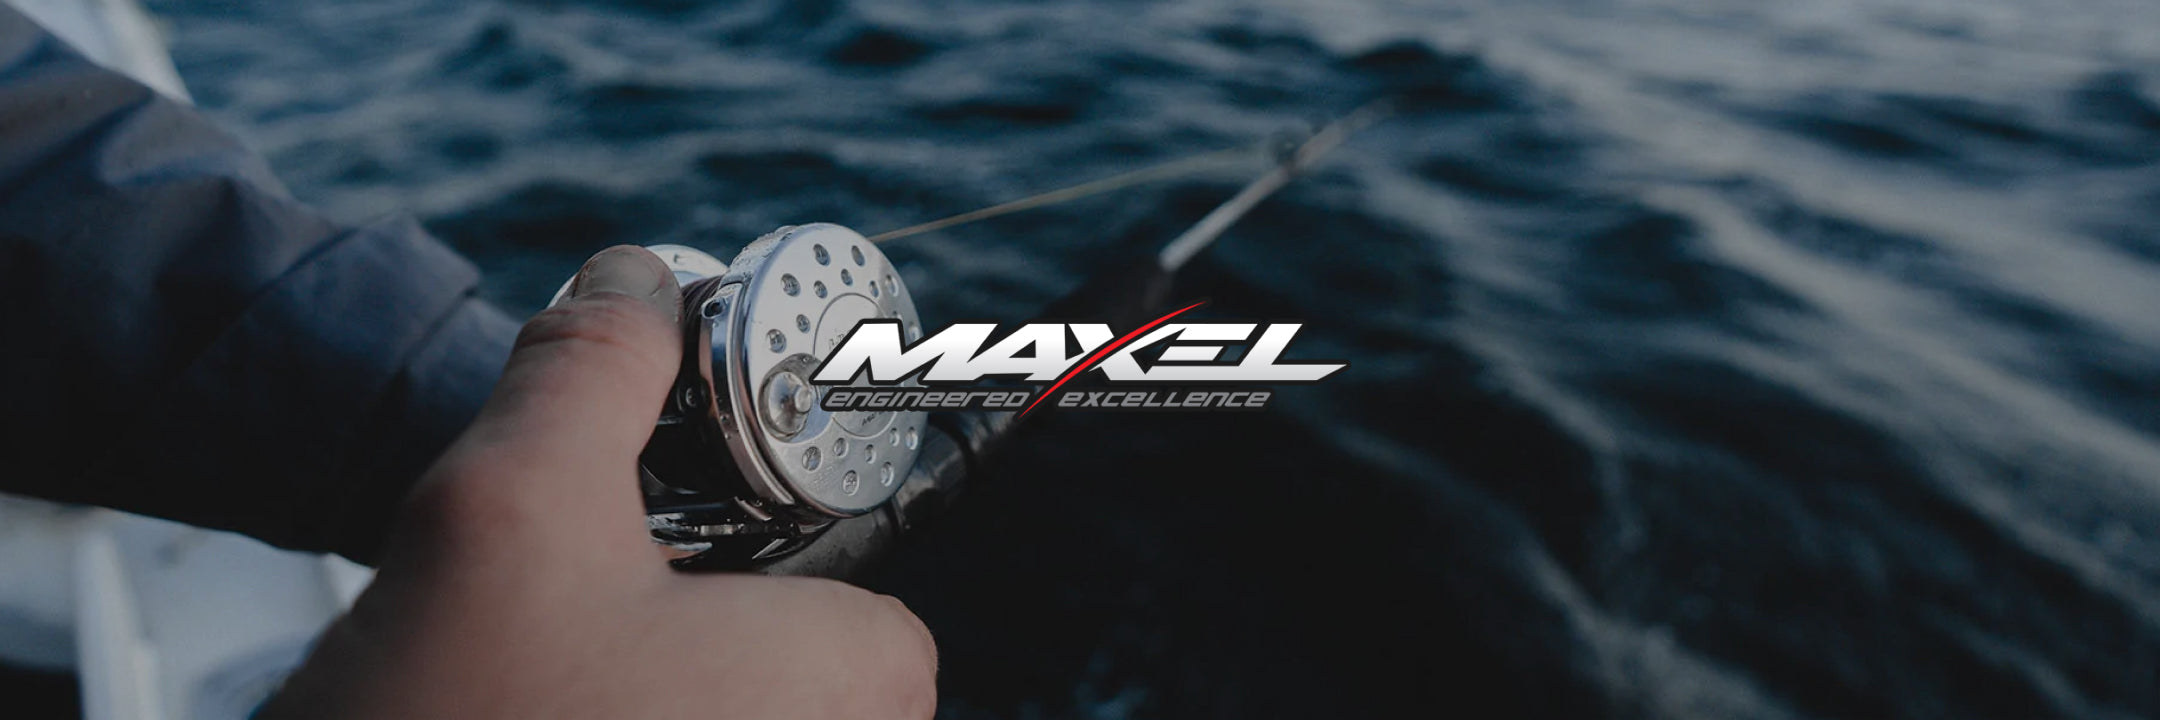 Maxel Fishing